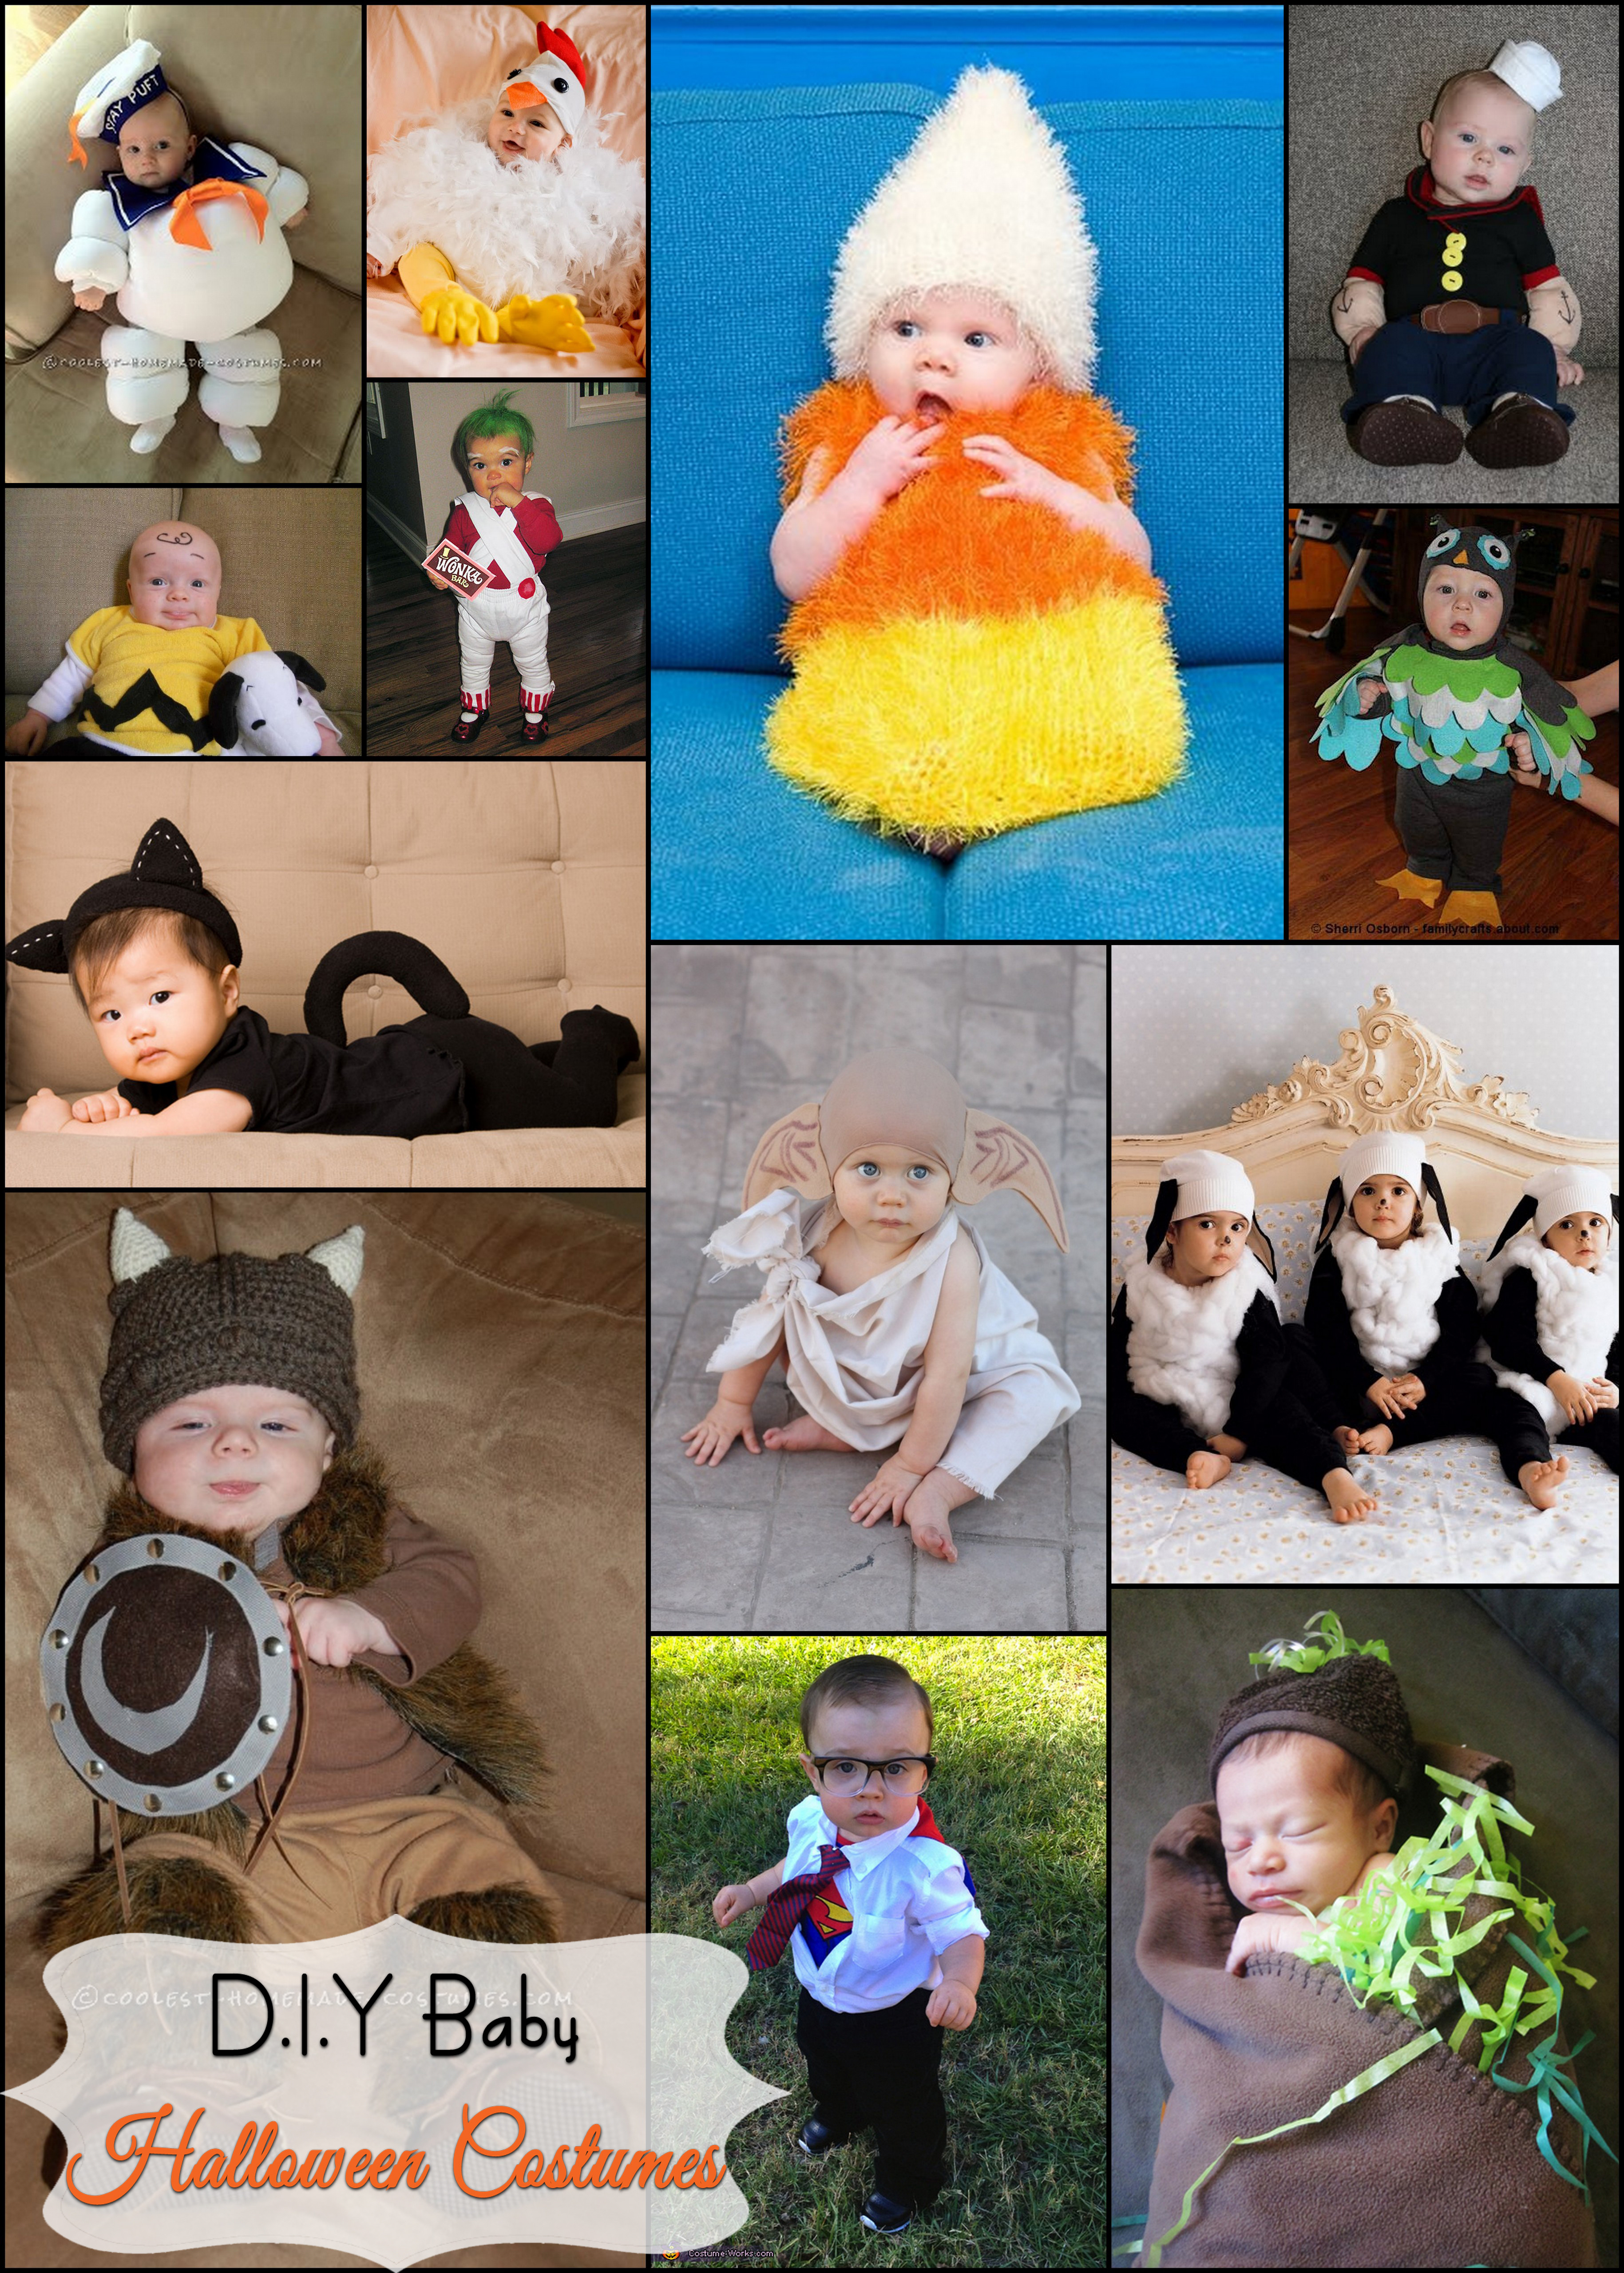 Best ideas about DIY Baby Boy Halloween Costumes
. Save or Pin D I Y Baby Halloween Costumes Now.